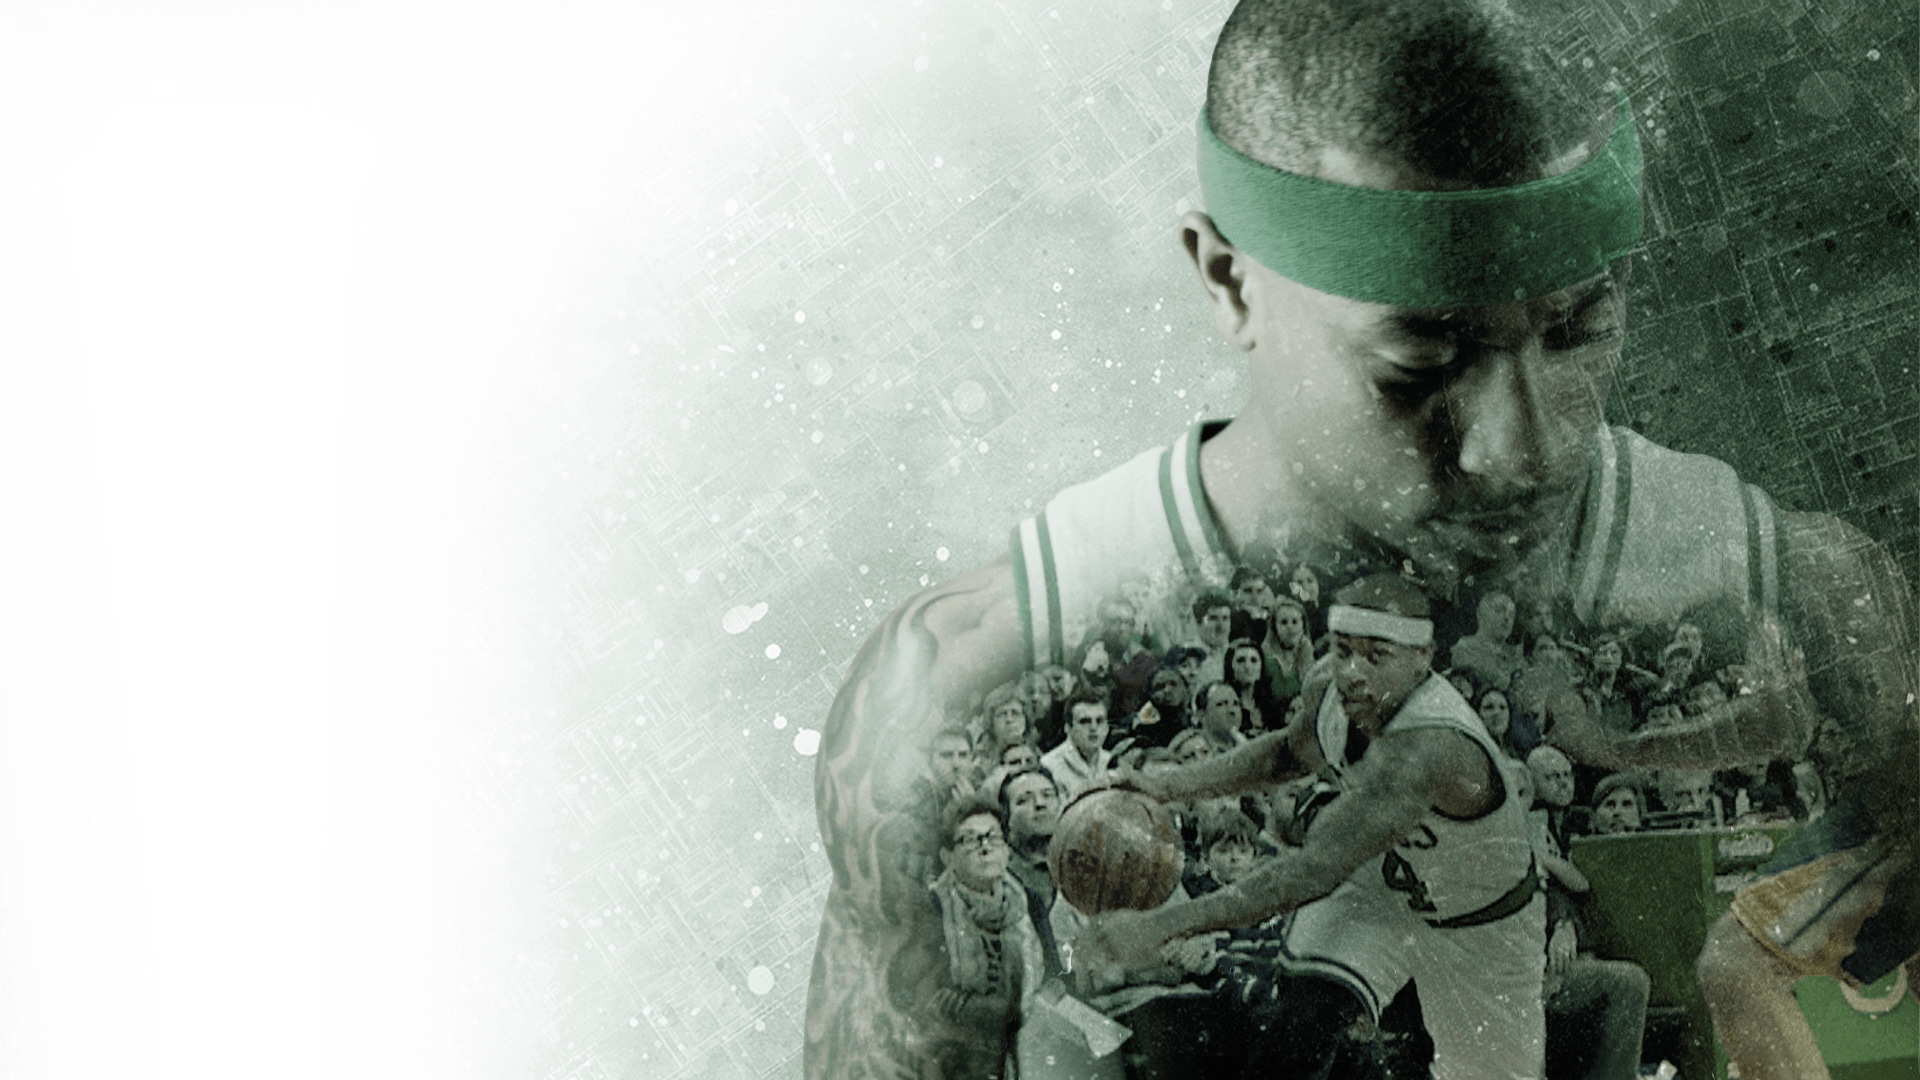 Boston Celtics: Green Runs Deep. Work. Allen & Gerritsen